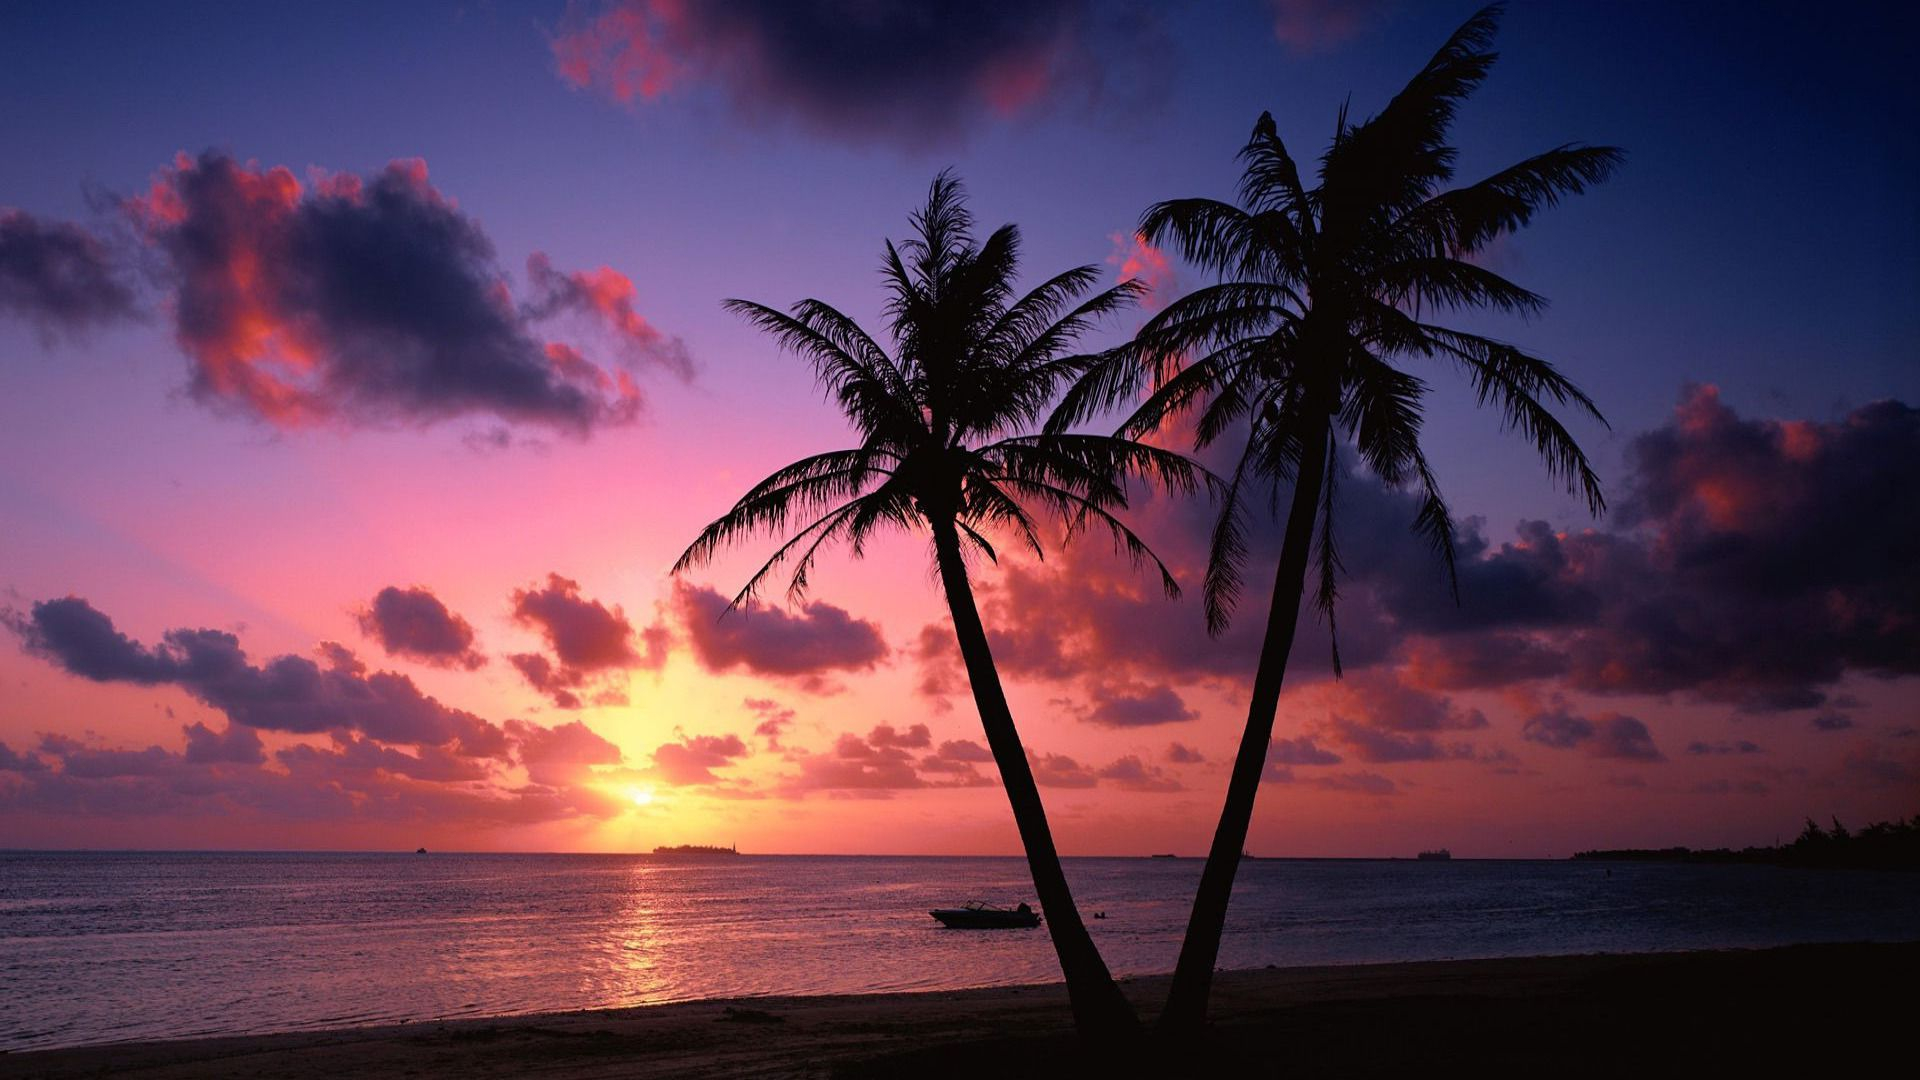 1920x1080 Tropical Sunset | Sunset wallpaper, Sunset images, Beach wallpaper